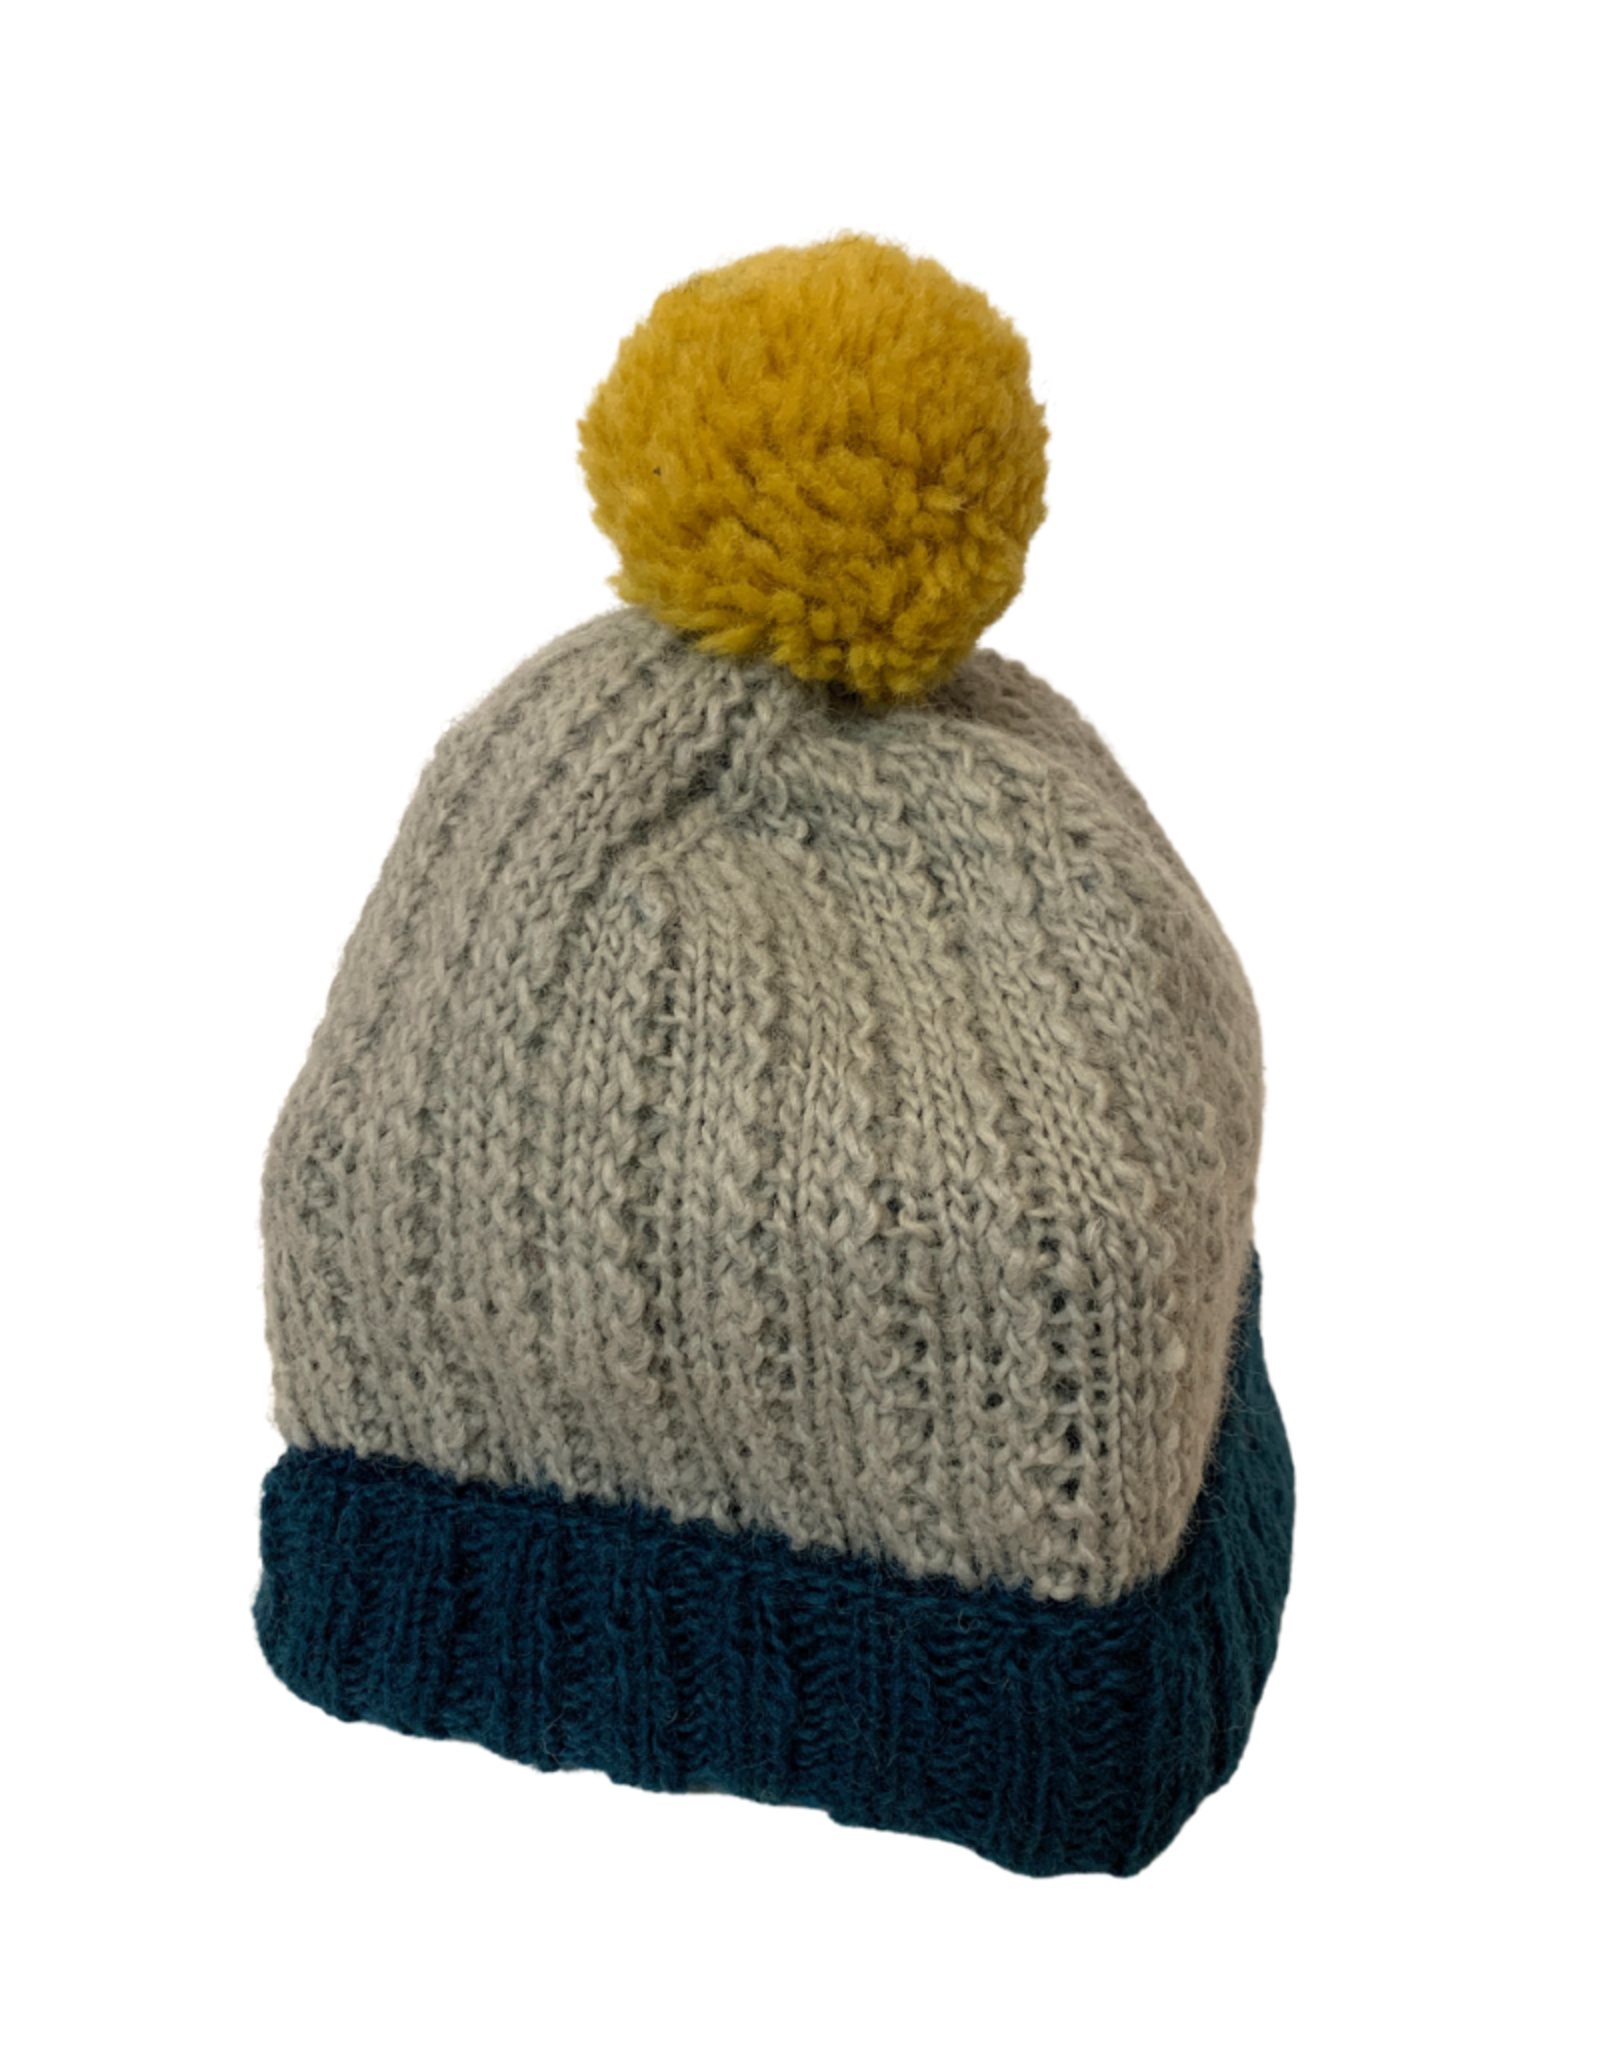 Wool Hat with Popom - Nepal